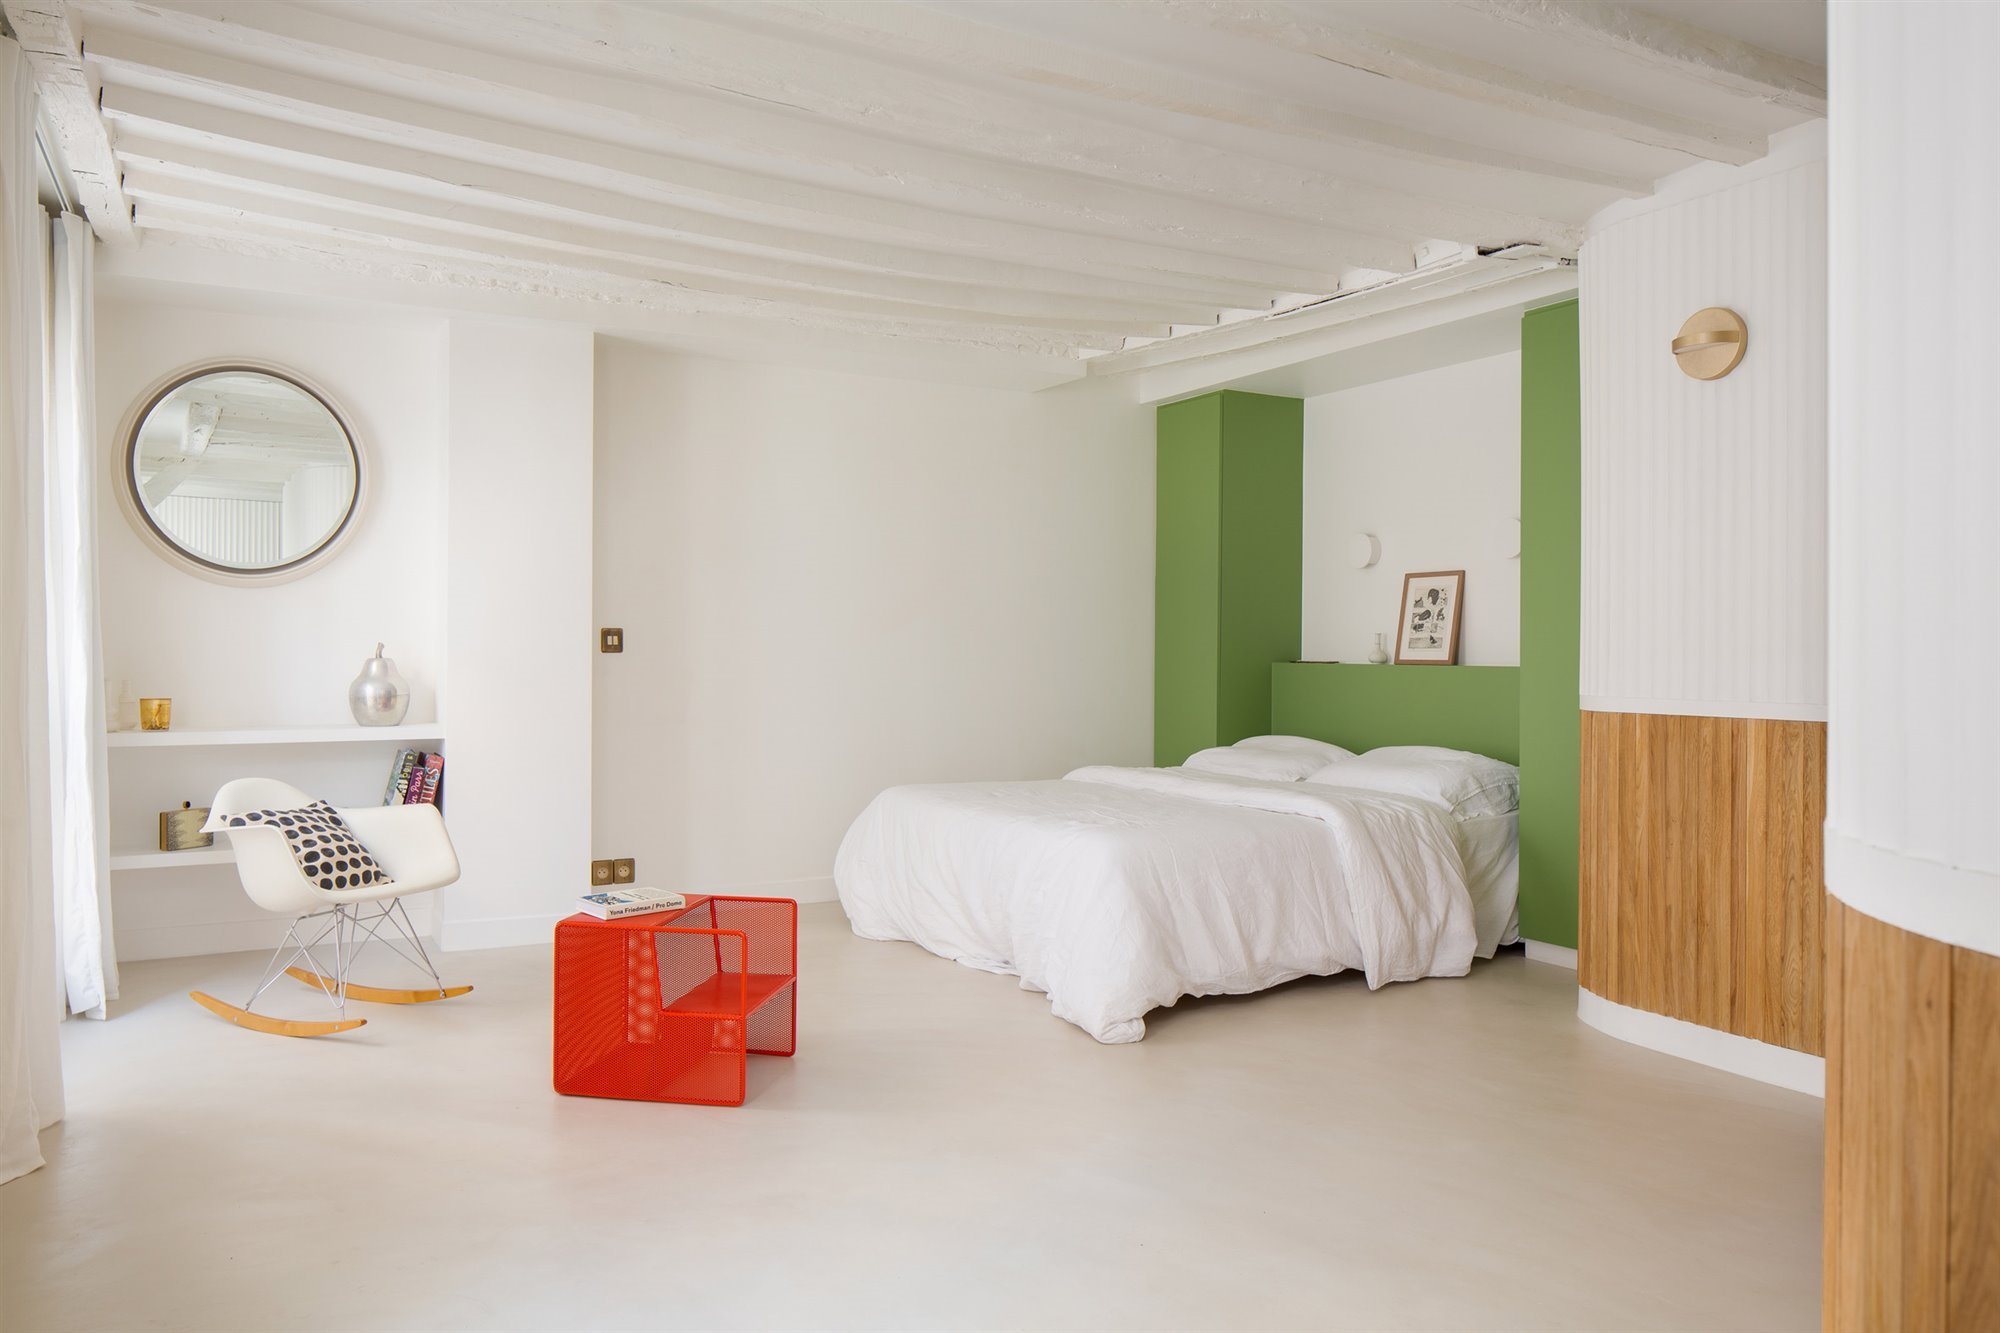 Piso reformado en Paris con techos con vigas dormitorio con espejo redondo y pared verde